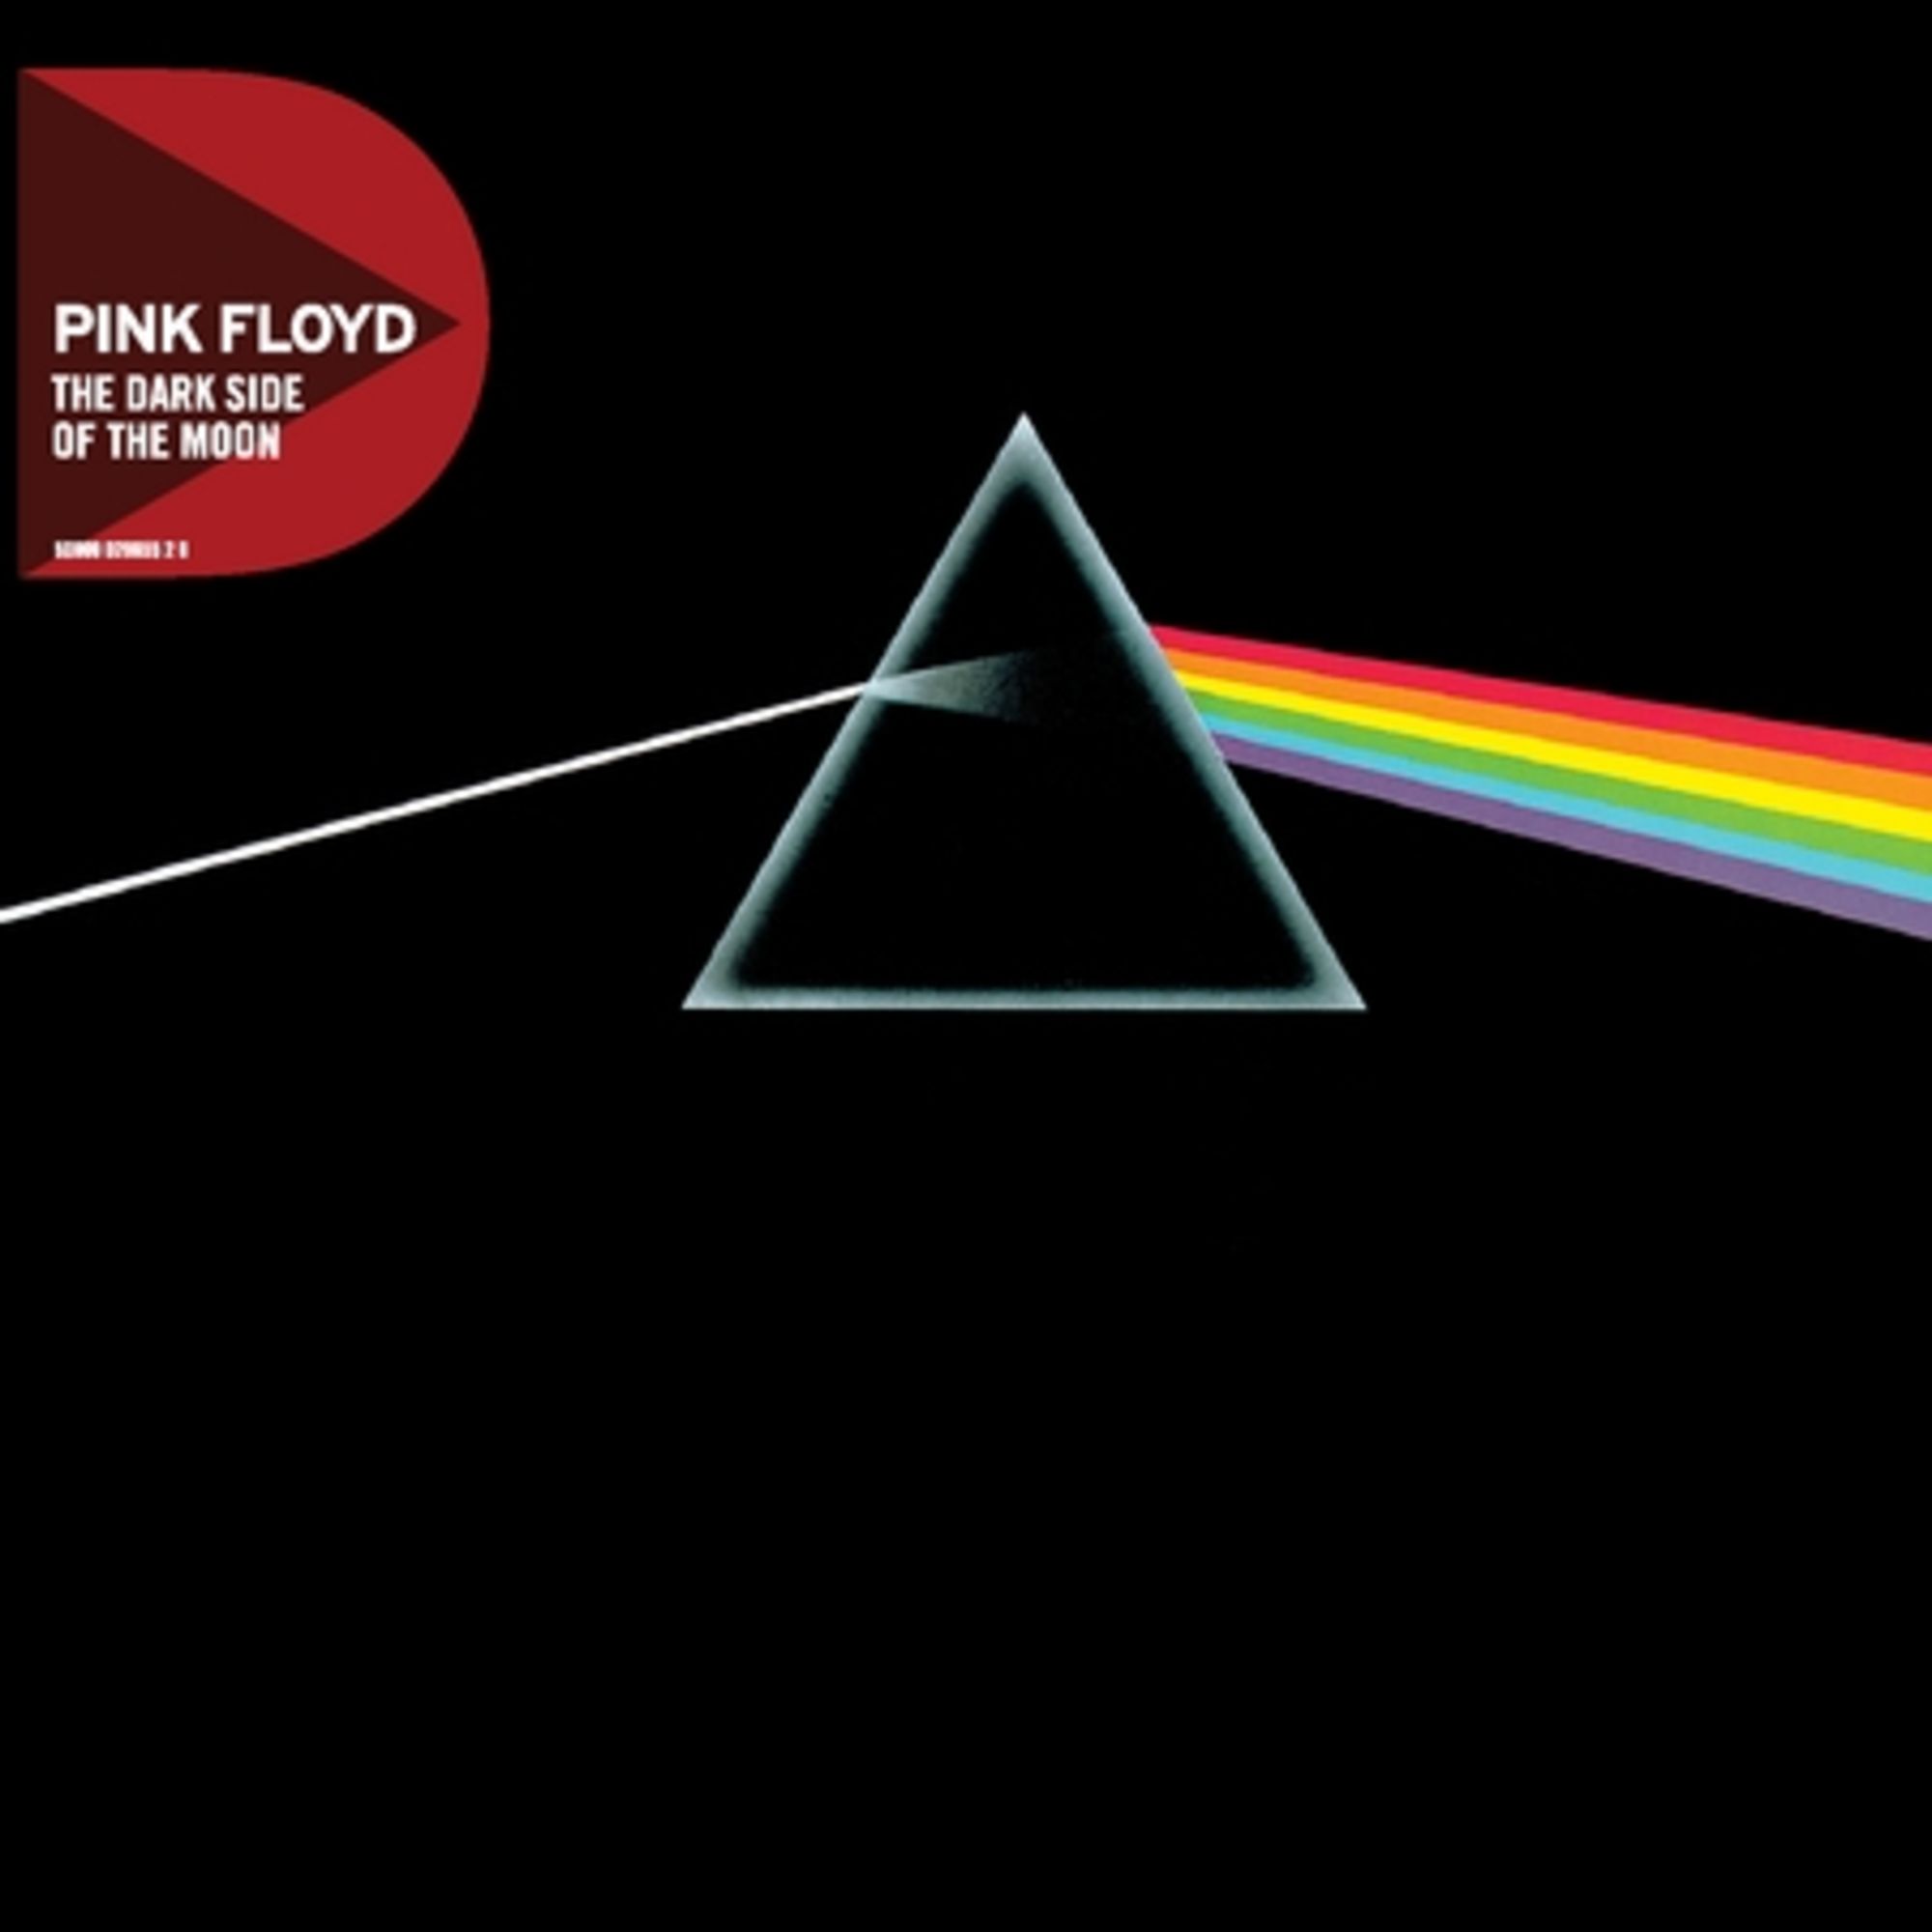 Dark Side Of The Moon (remastered)' von 'Pink Floyd' auf 'CD' - Musik